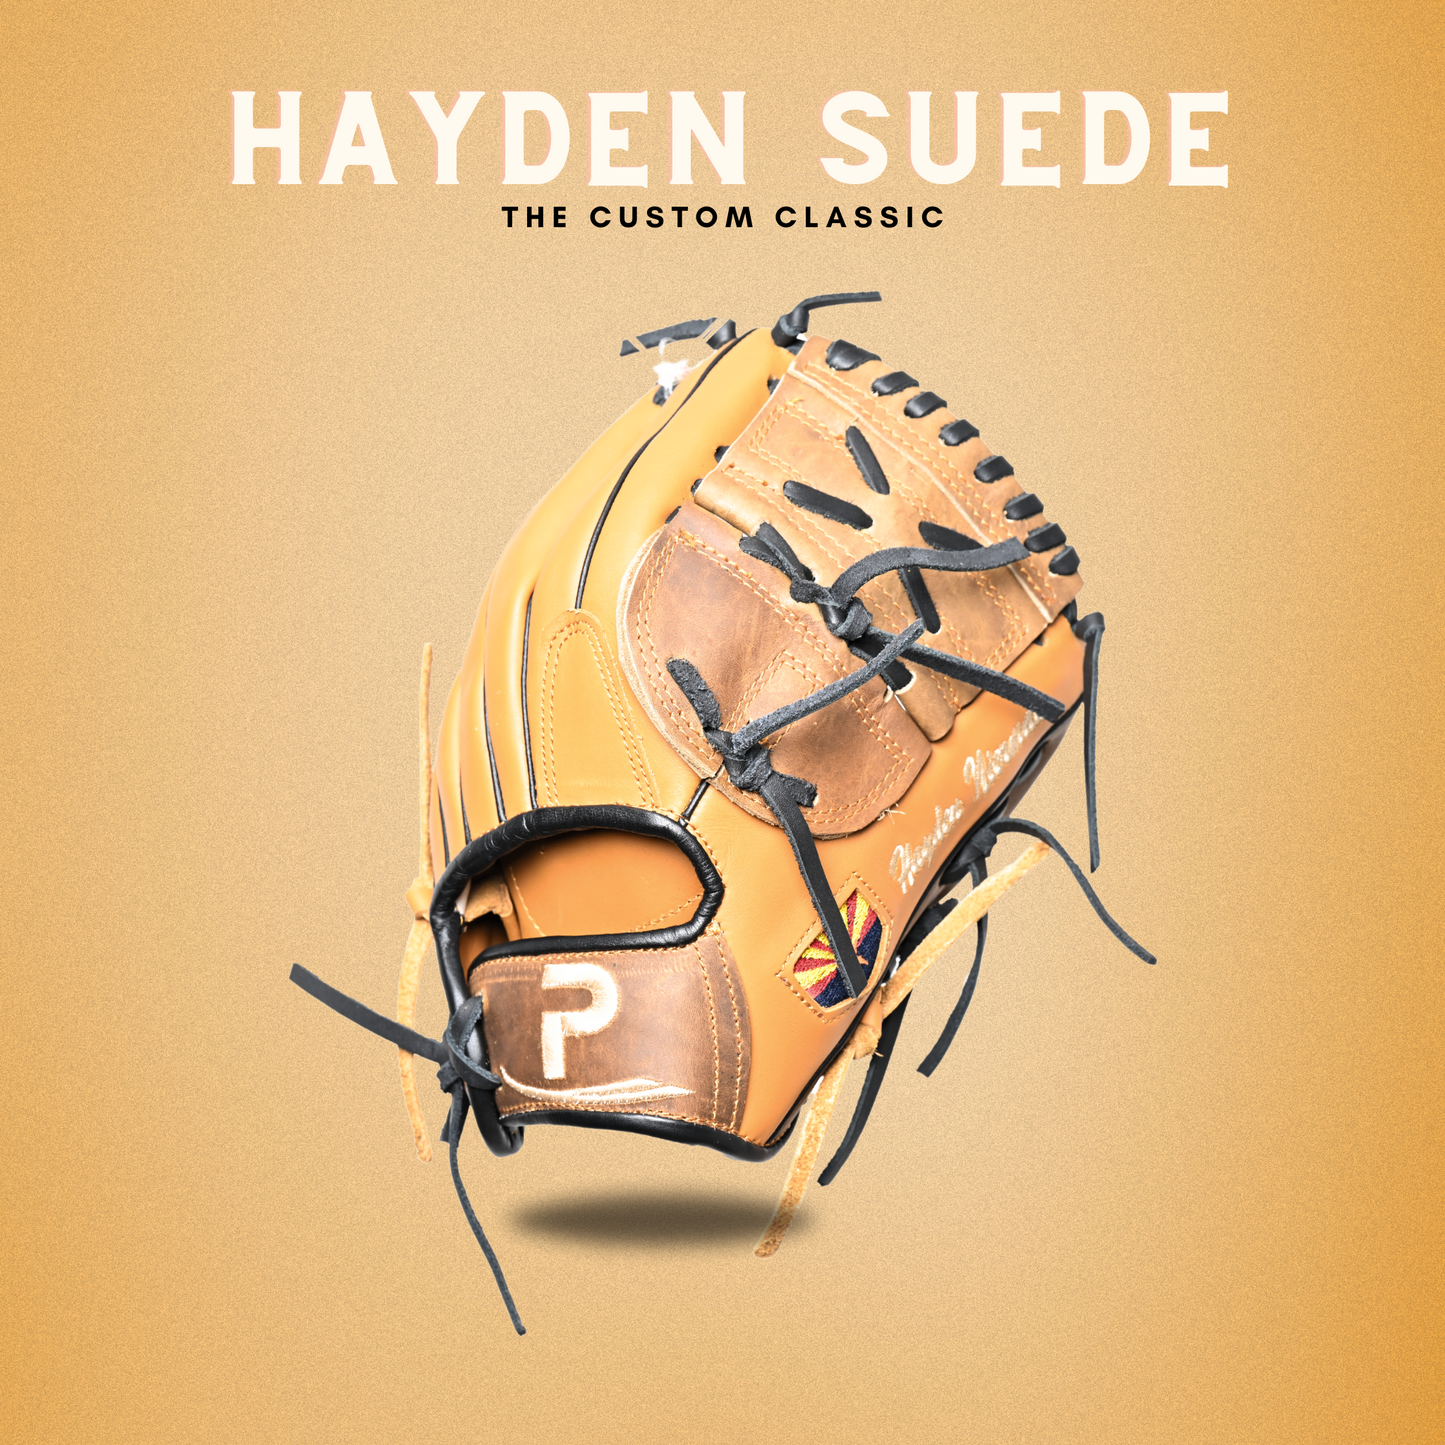 Hayden Suede